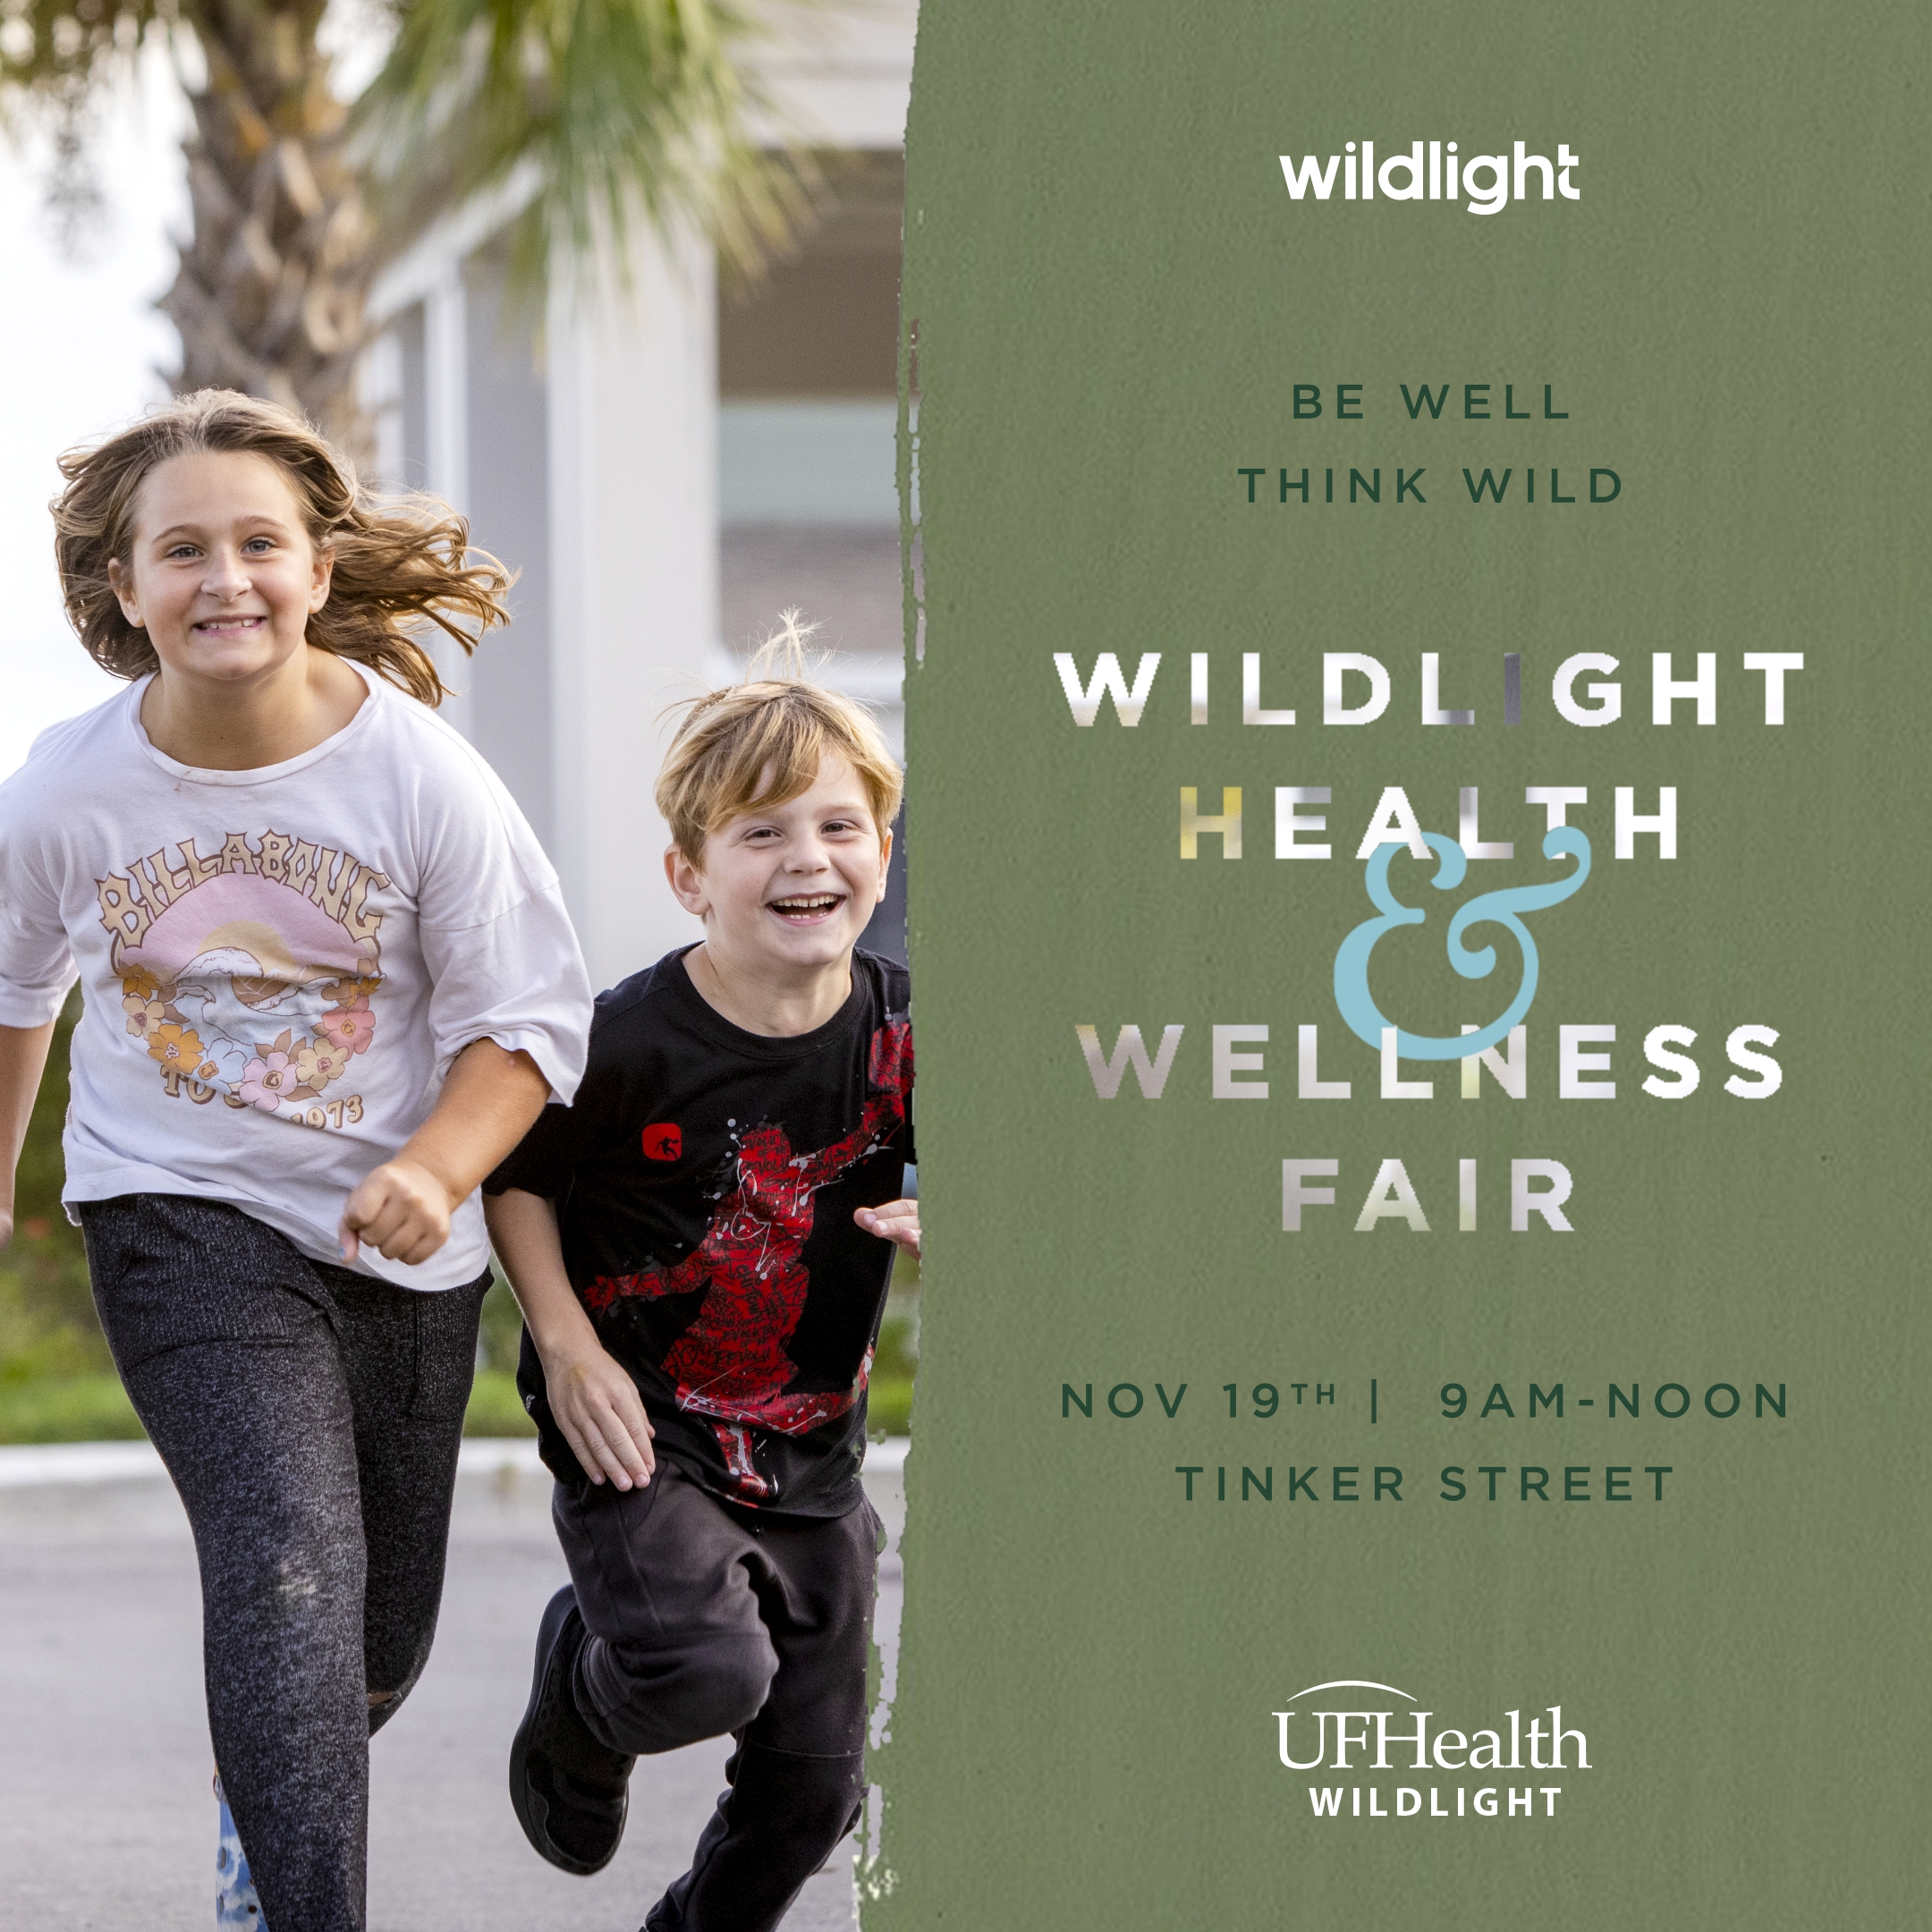 Wildlight health and wellness fair.